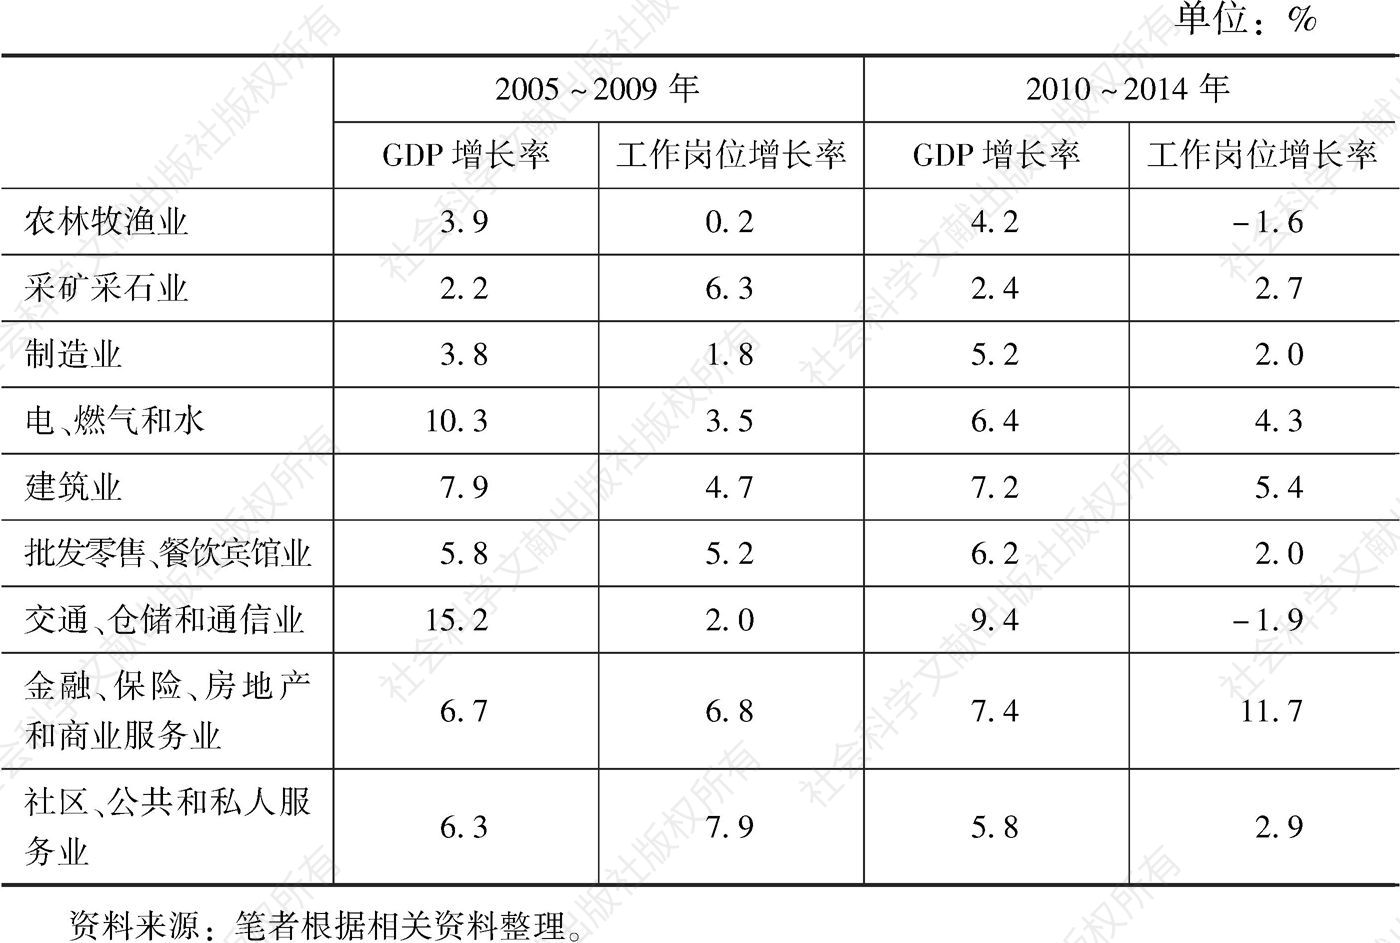 表6-3 各行业GDP增长率和工作岗位增长率